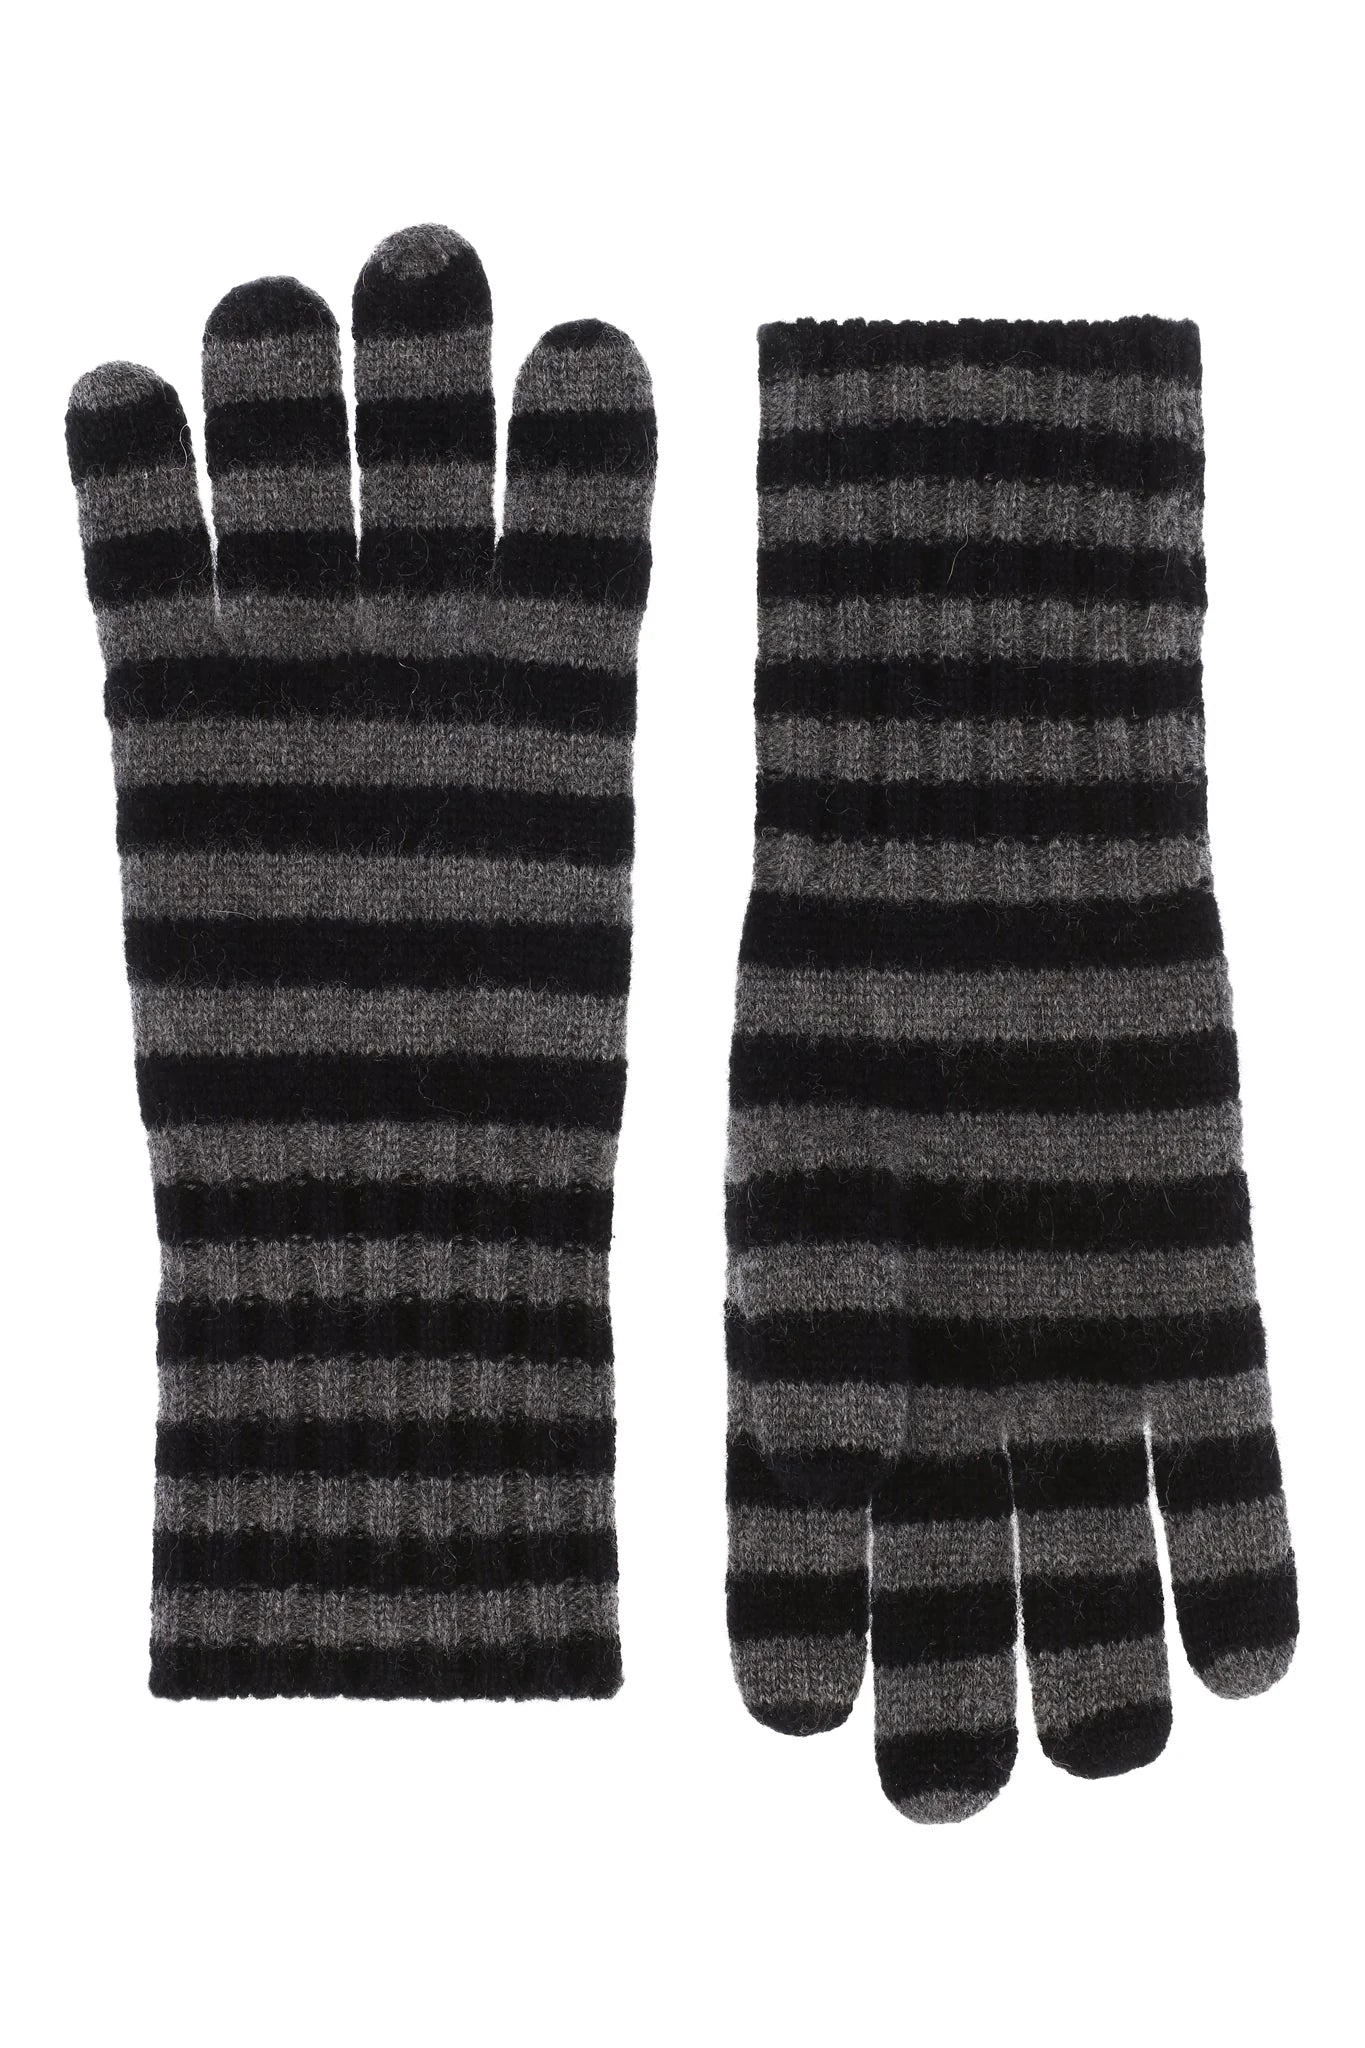 100% Cashmere Gloves - Black & Grey Stripes